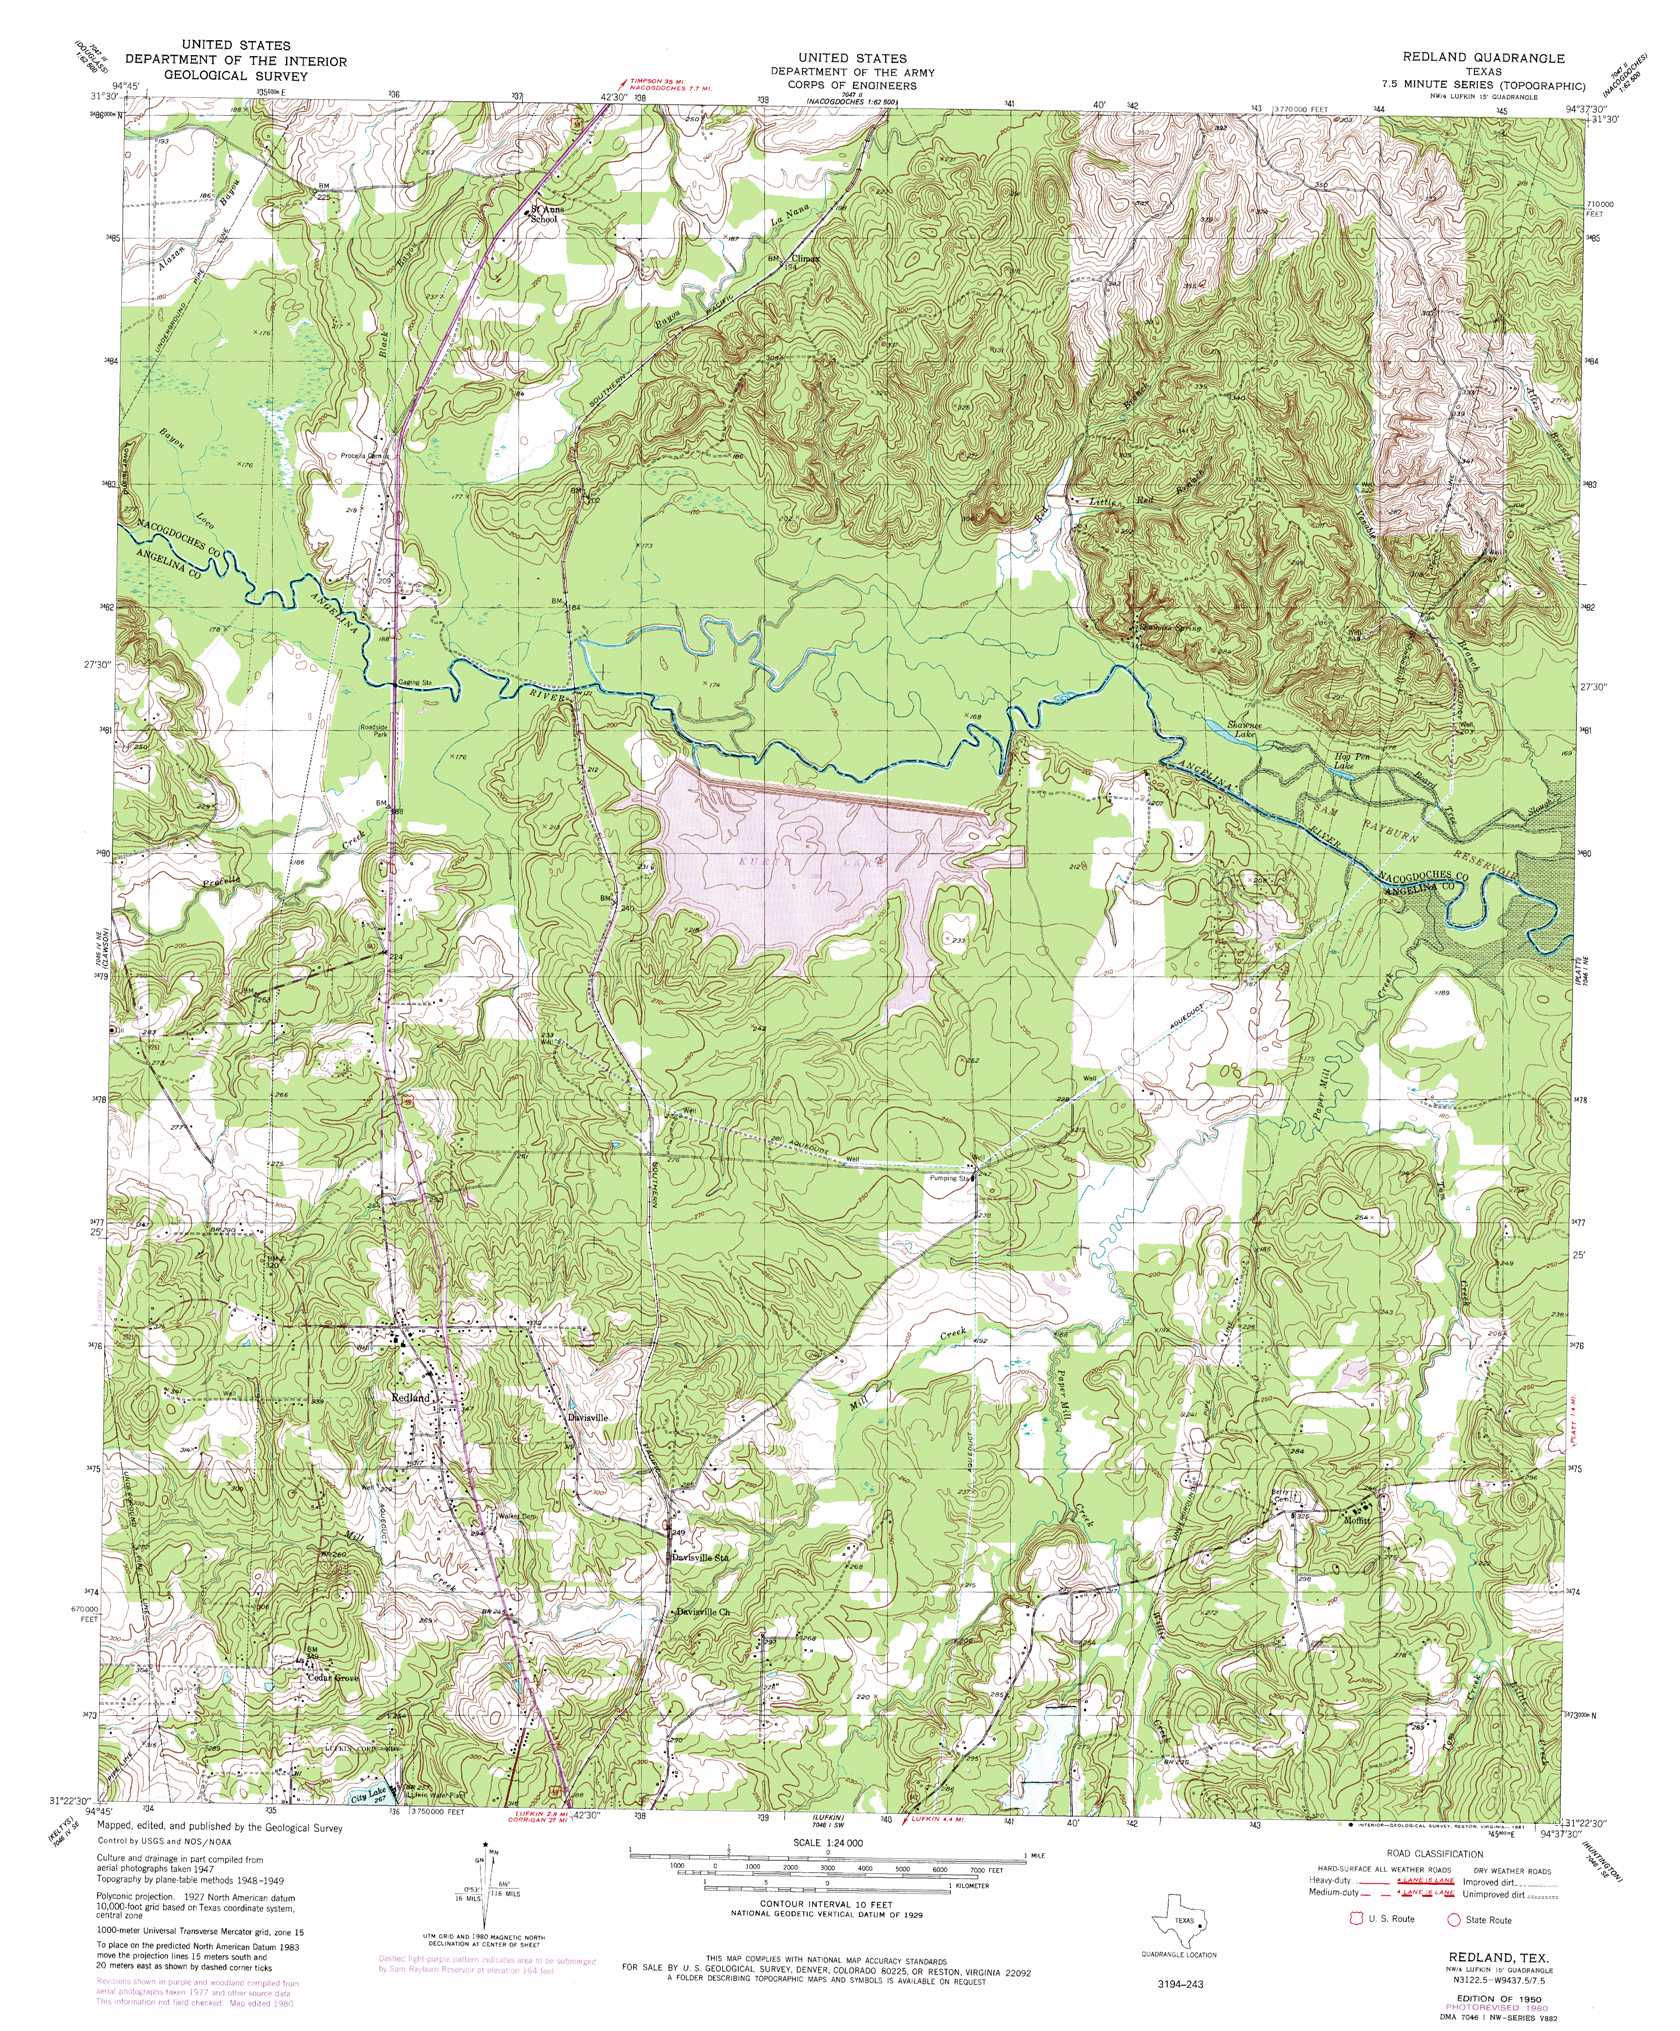 Redland topographic map, TX - USGS Topo Quad 31094d6